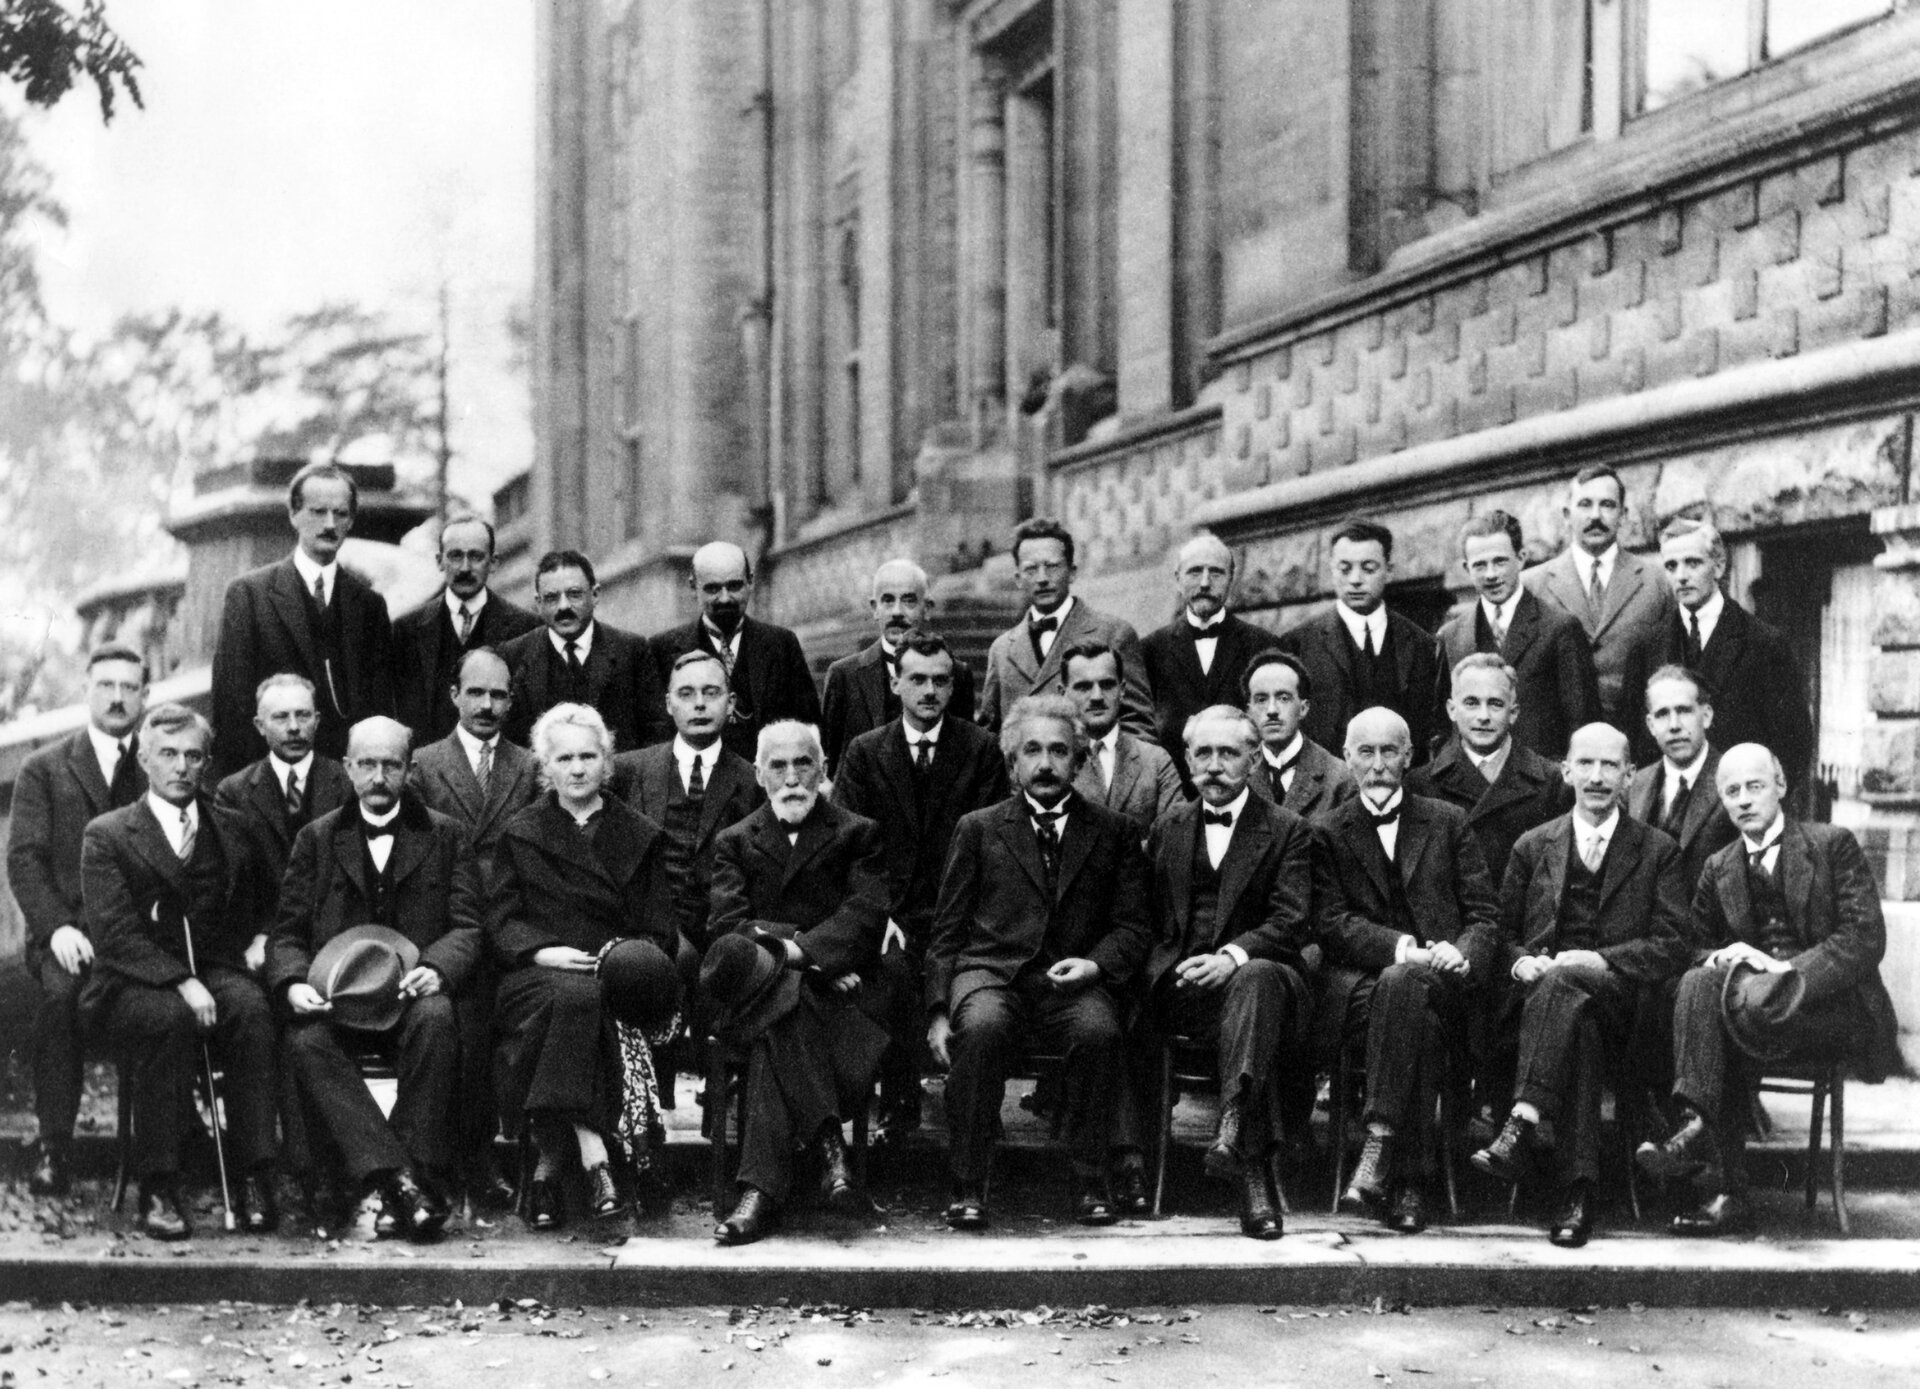 Rys. b. Zdjęcie poglądowe przedstawia pozowane ujęcie grupy naukowców. Kilkunastu naukowców siedzi na krzesłach, kilkunastu stoi za nimi. Grupę stanowią mężczyźni i jedna kobieta.